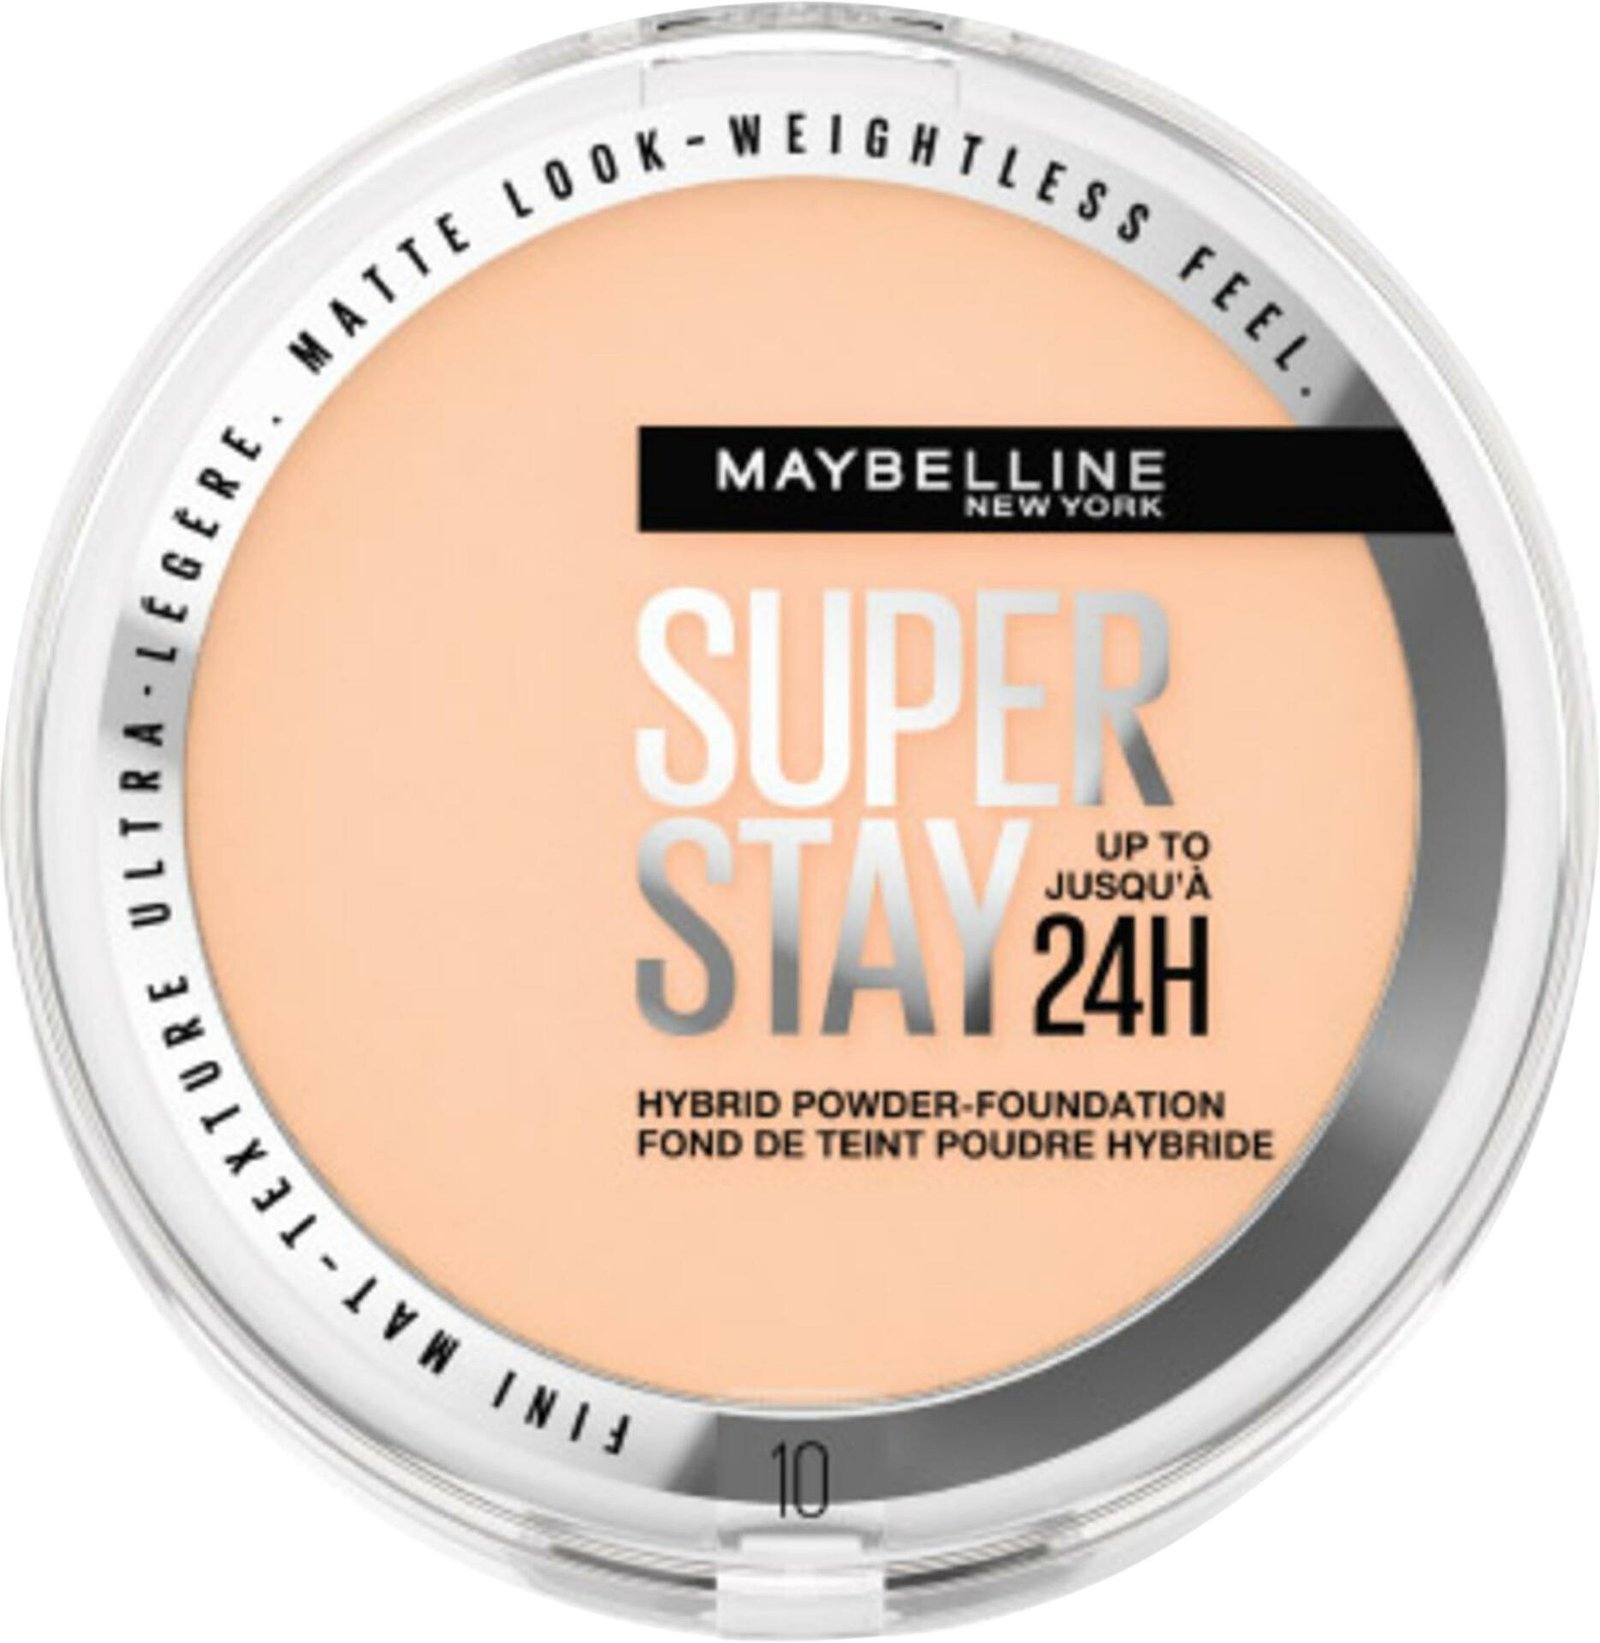 Maybelline New York Superstay 24H Hybrid Powder Foundation 10